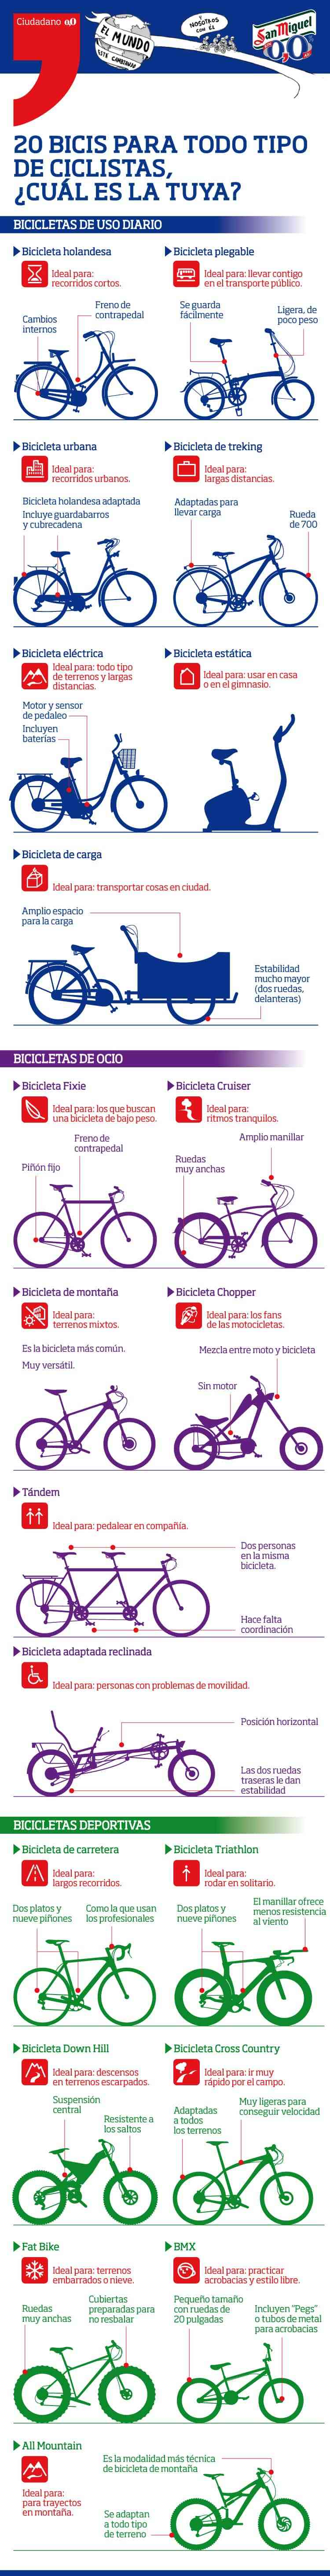 20 bicis para todo tipo de ciclistas